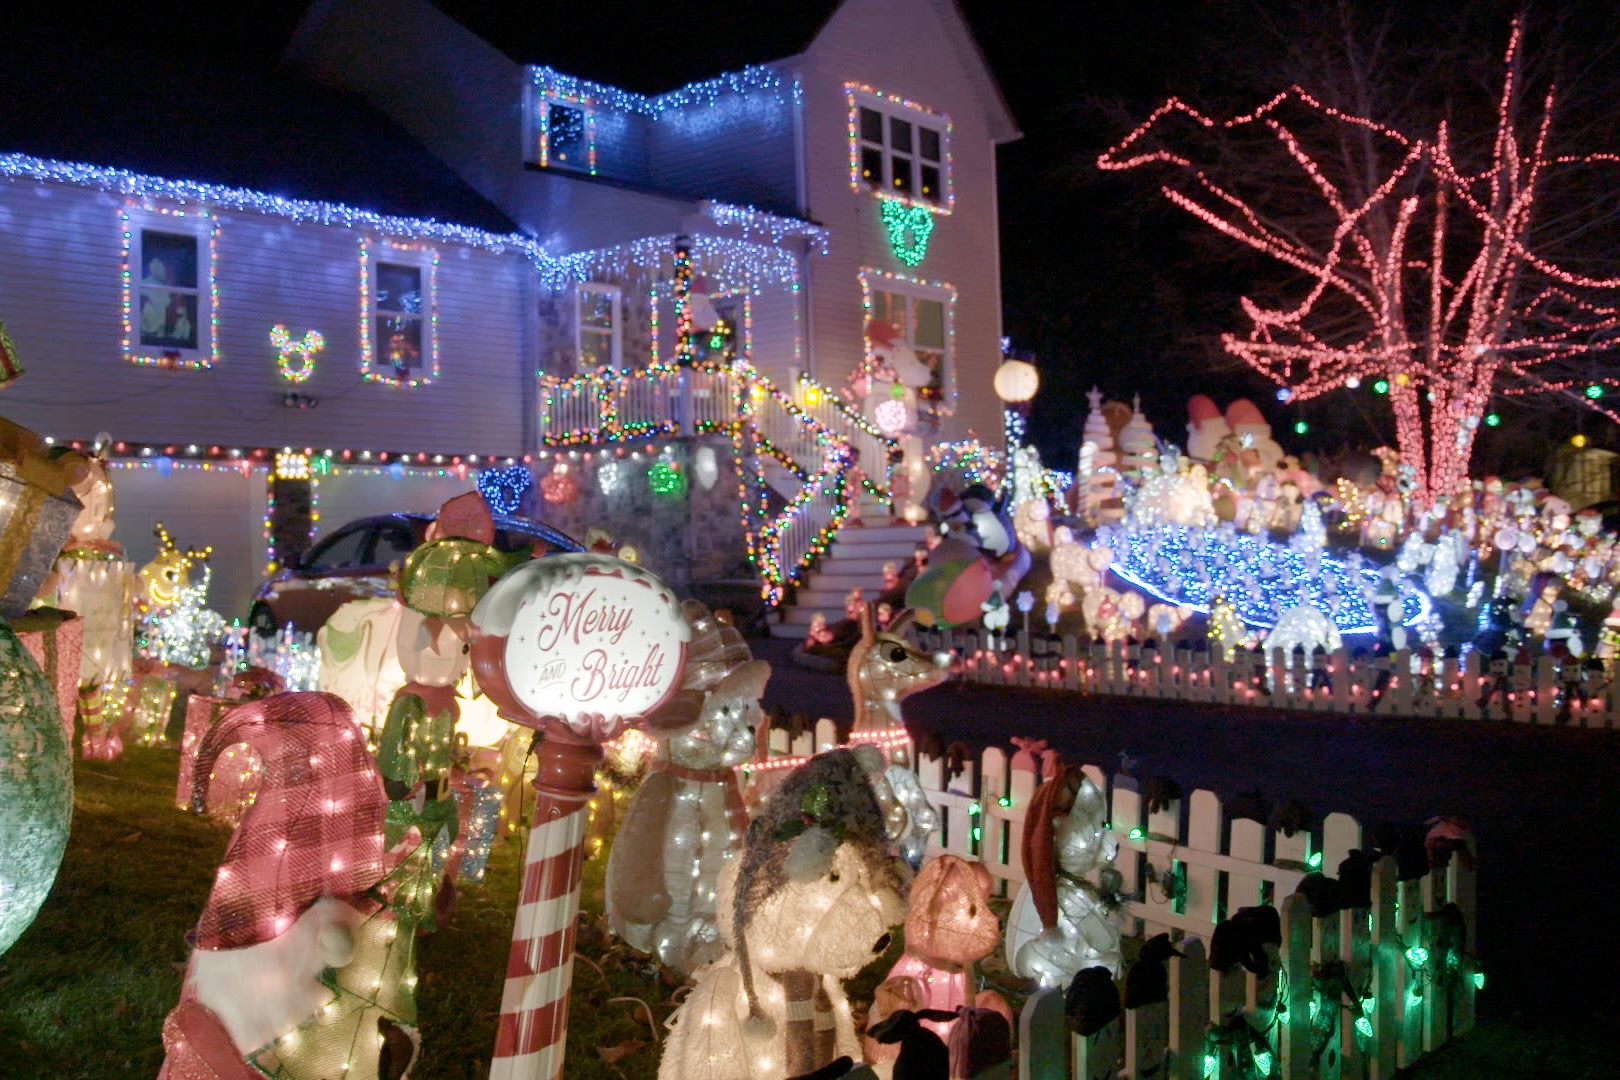 A colorful Christmas lights display